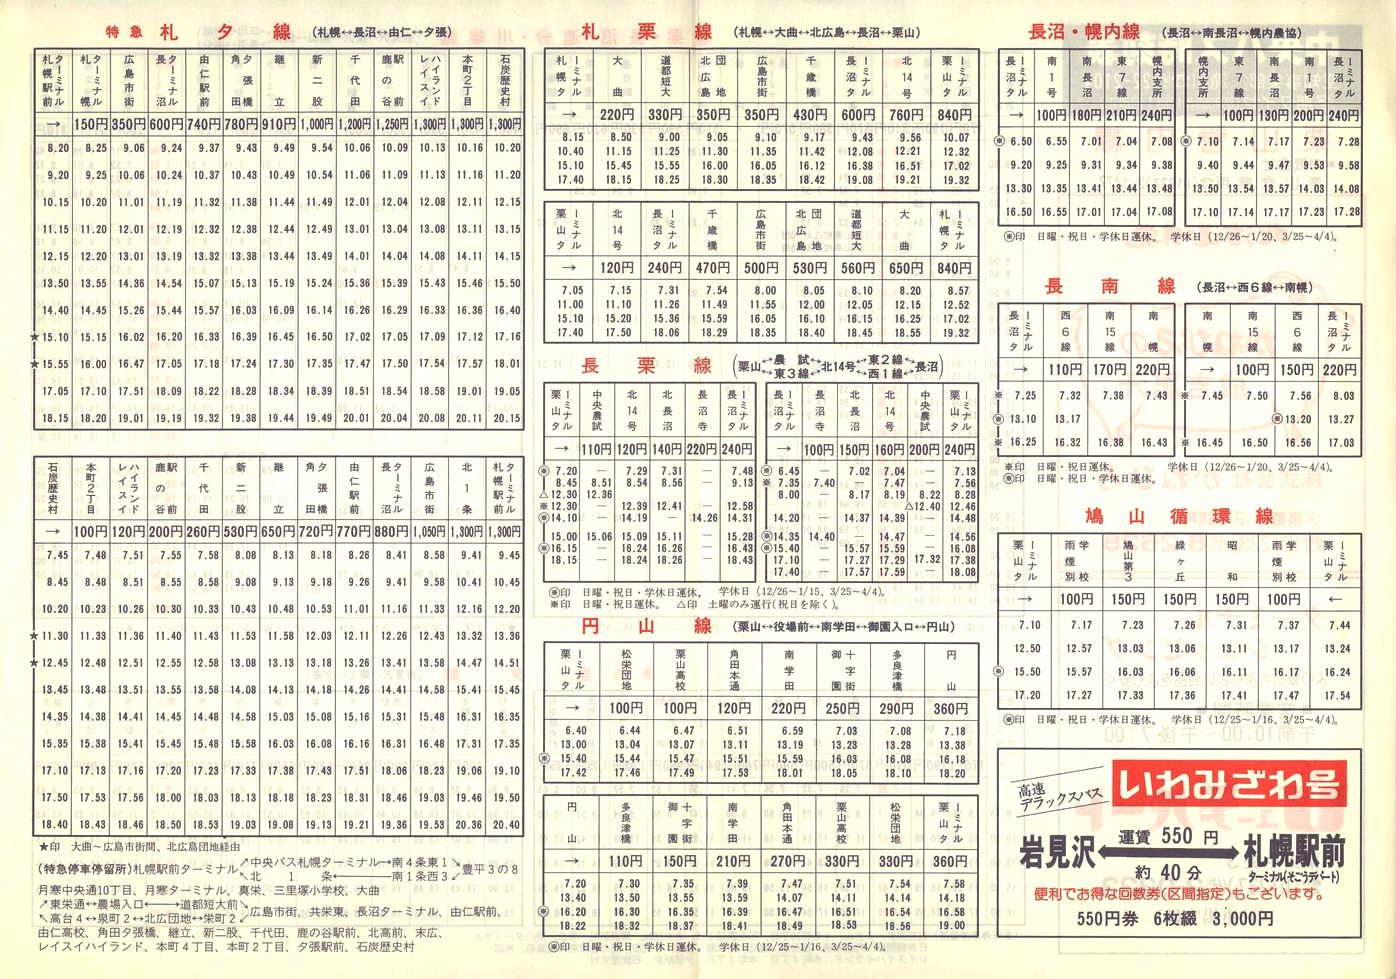 1984-12-01改正_北海道中央バス(空知)_栗山管内線時刻表裏面